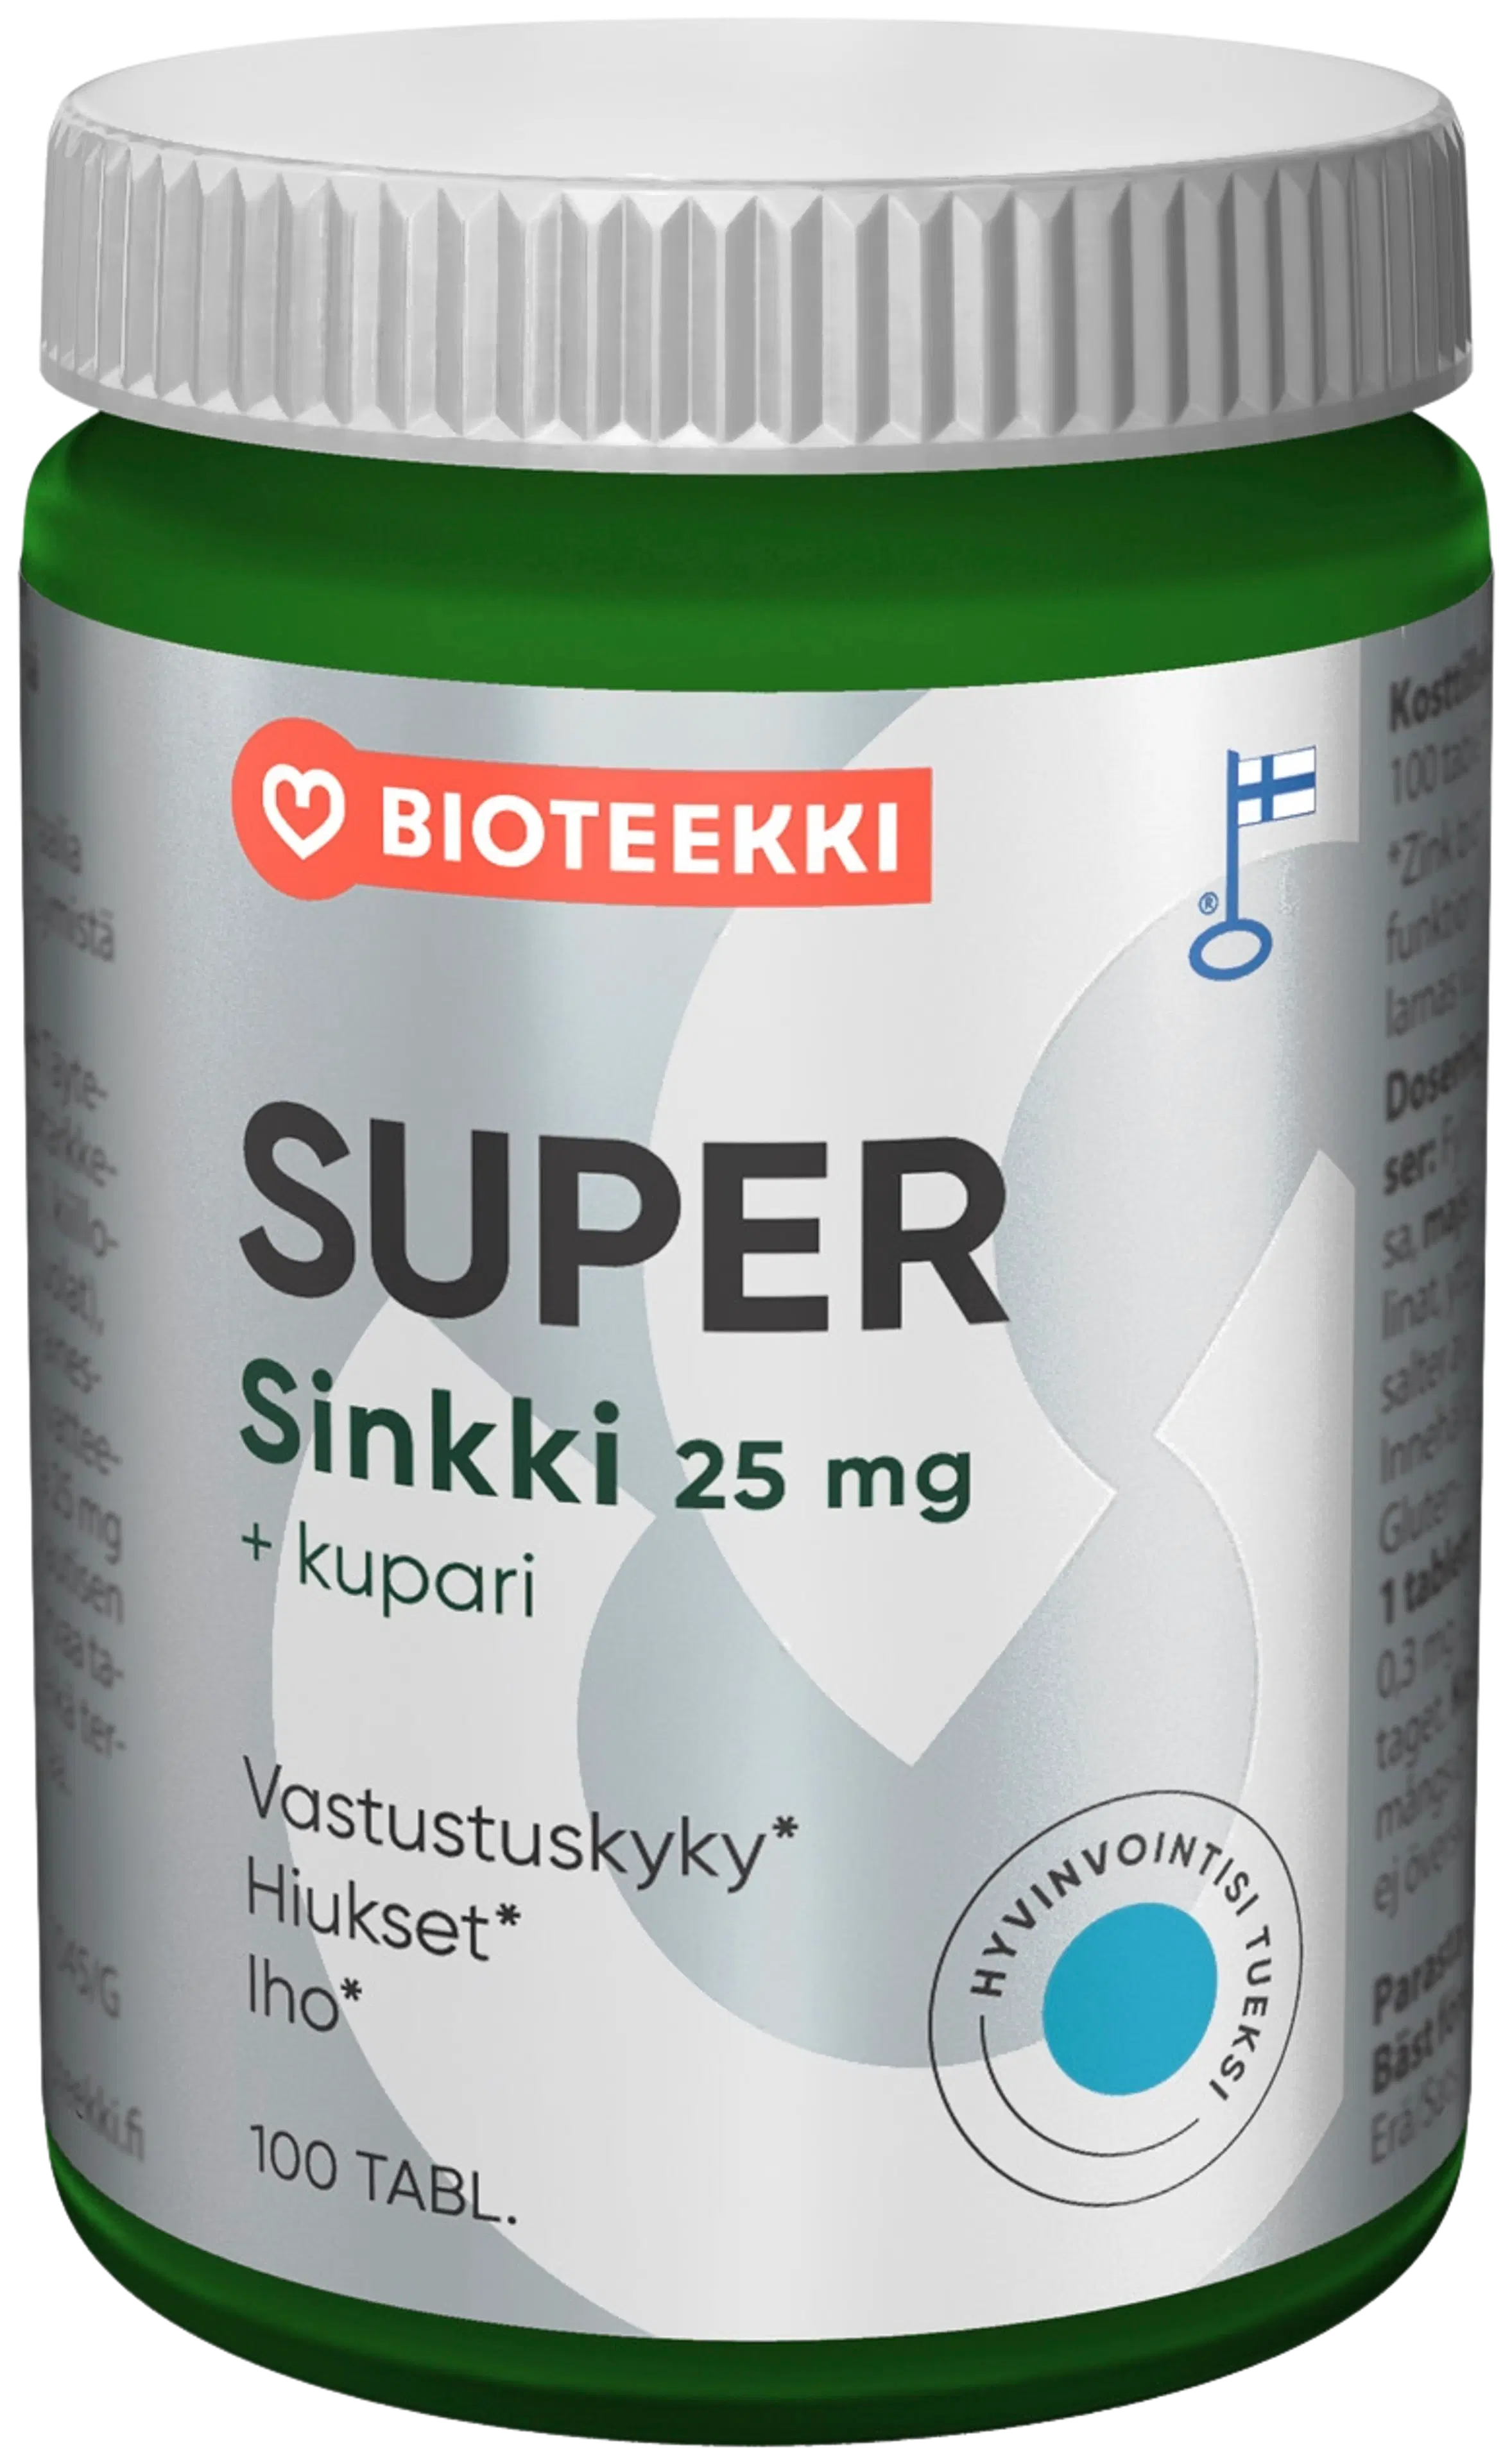 Bioteekin Super Sinkki+Kupari ravintolisä 100 tabl